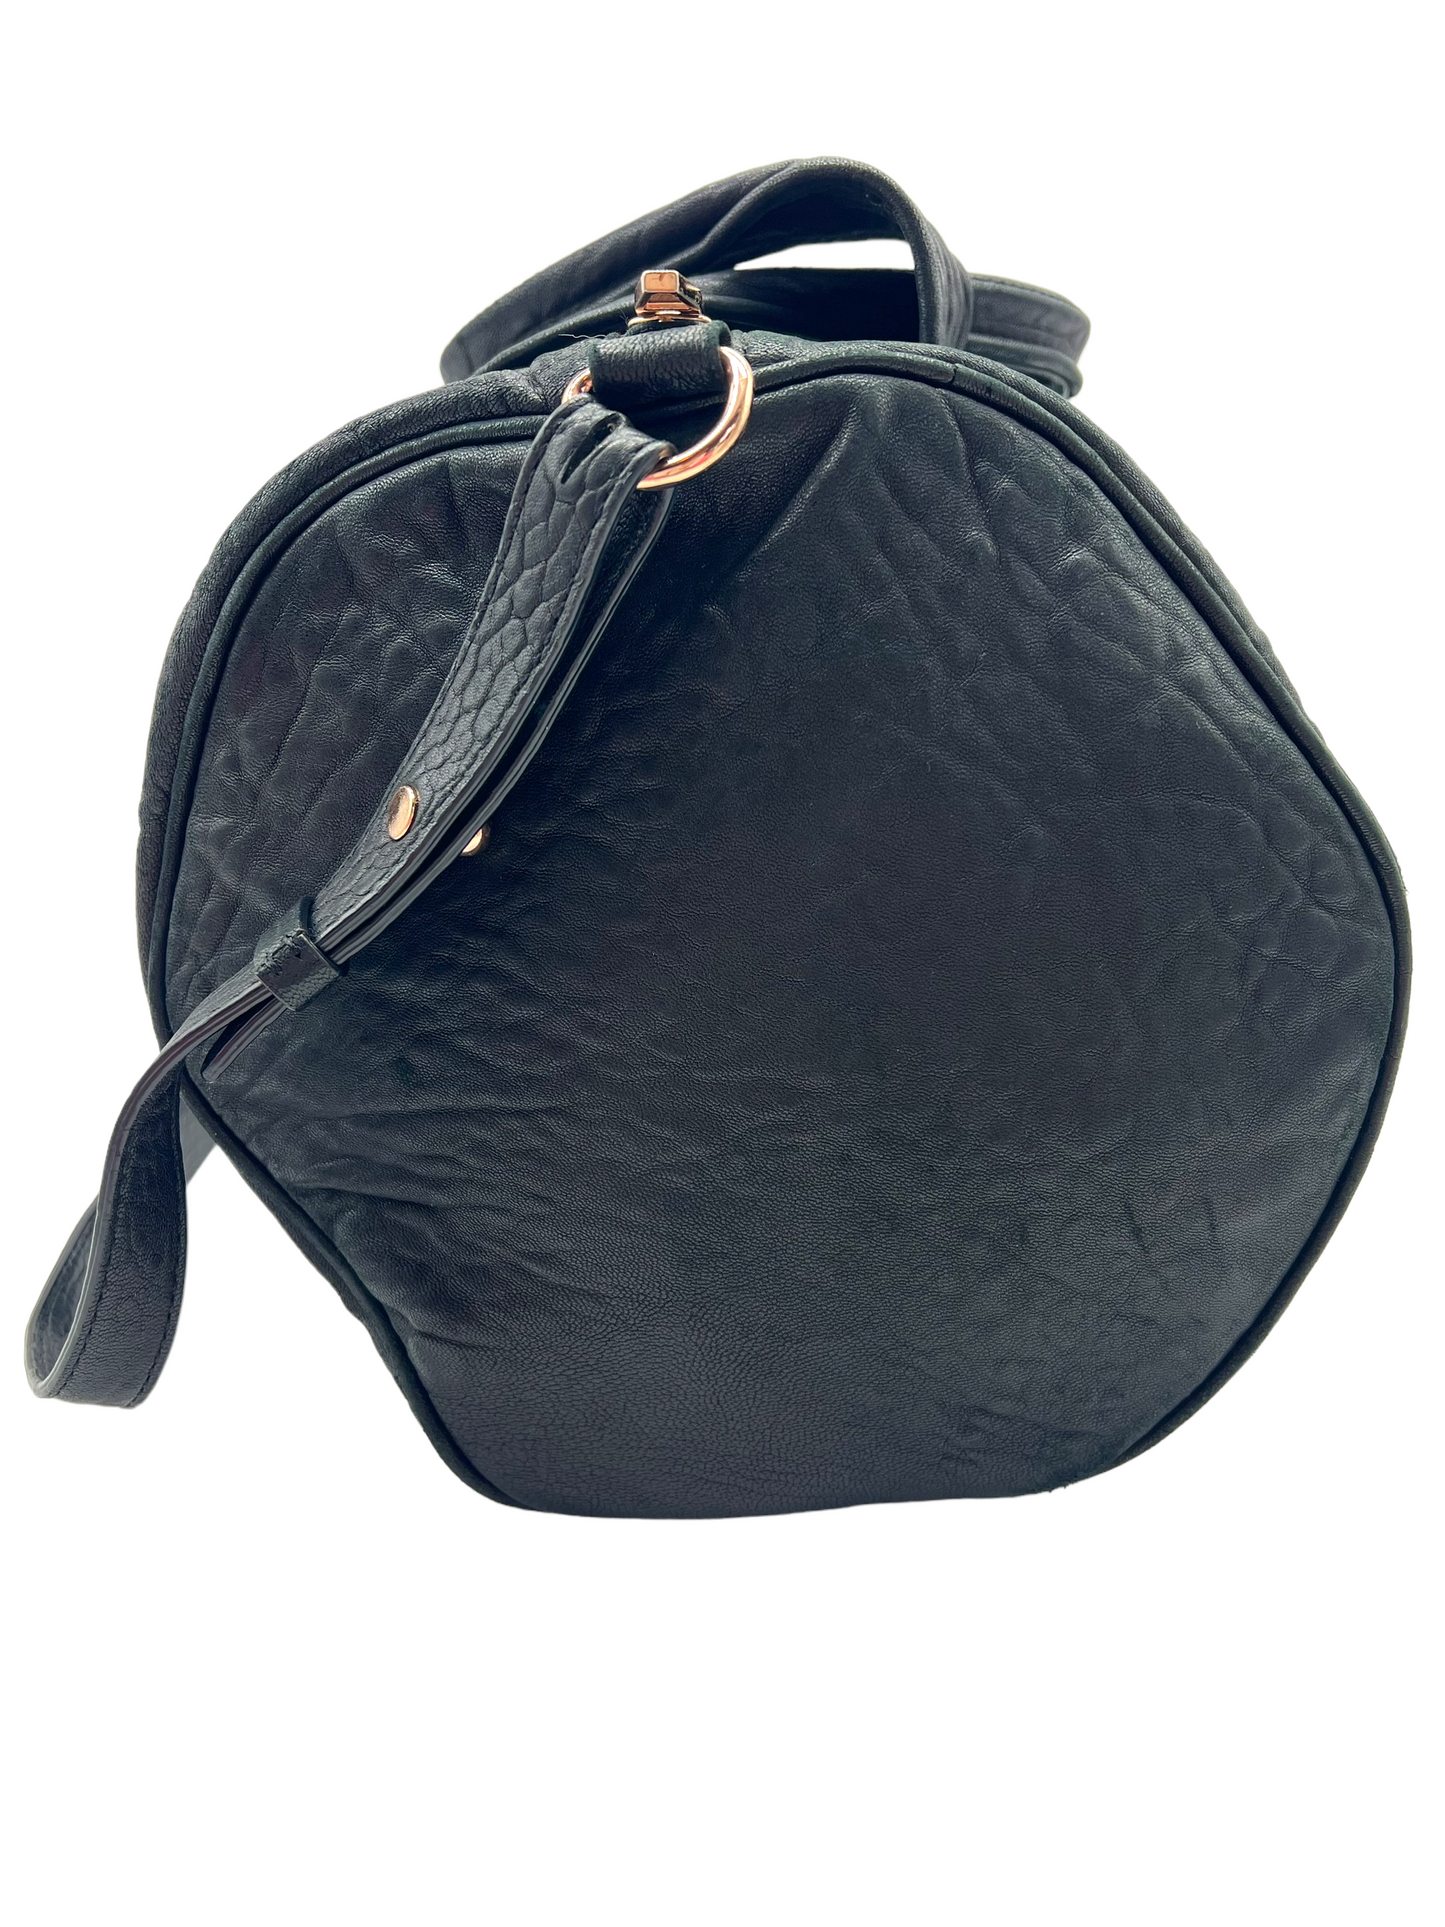 Alexander Wang Black Leather Rocco Handbag